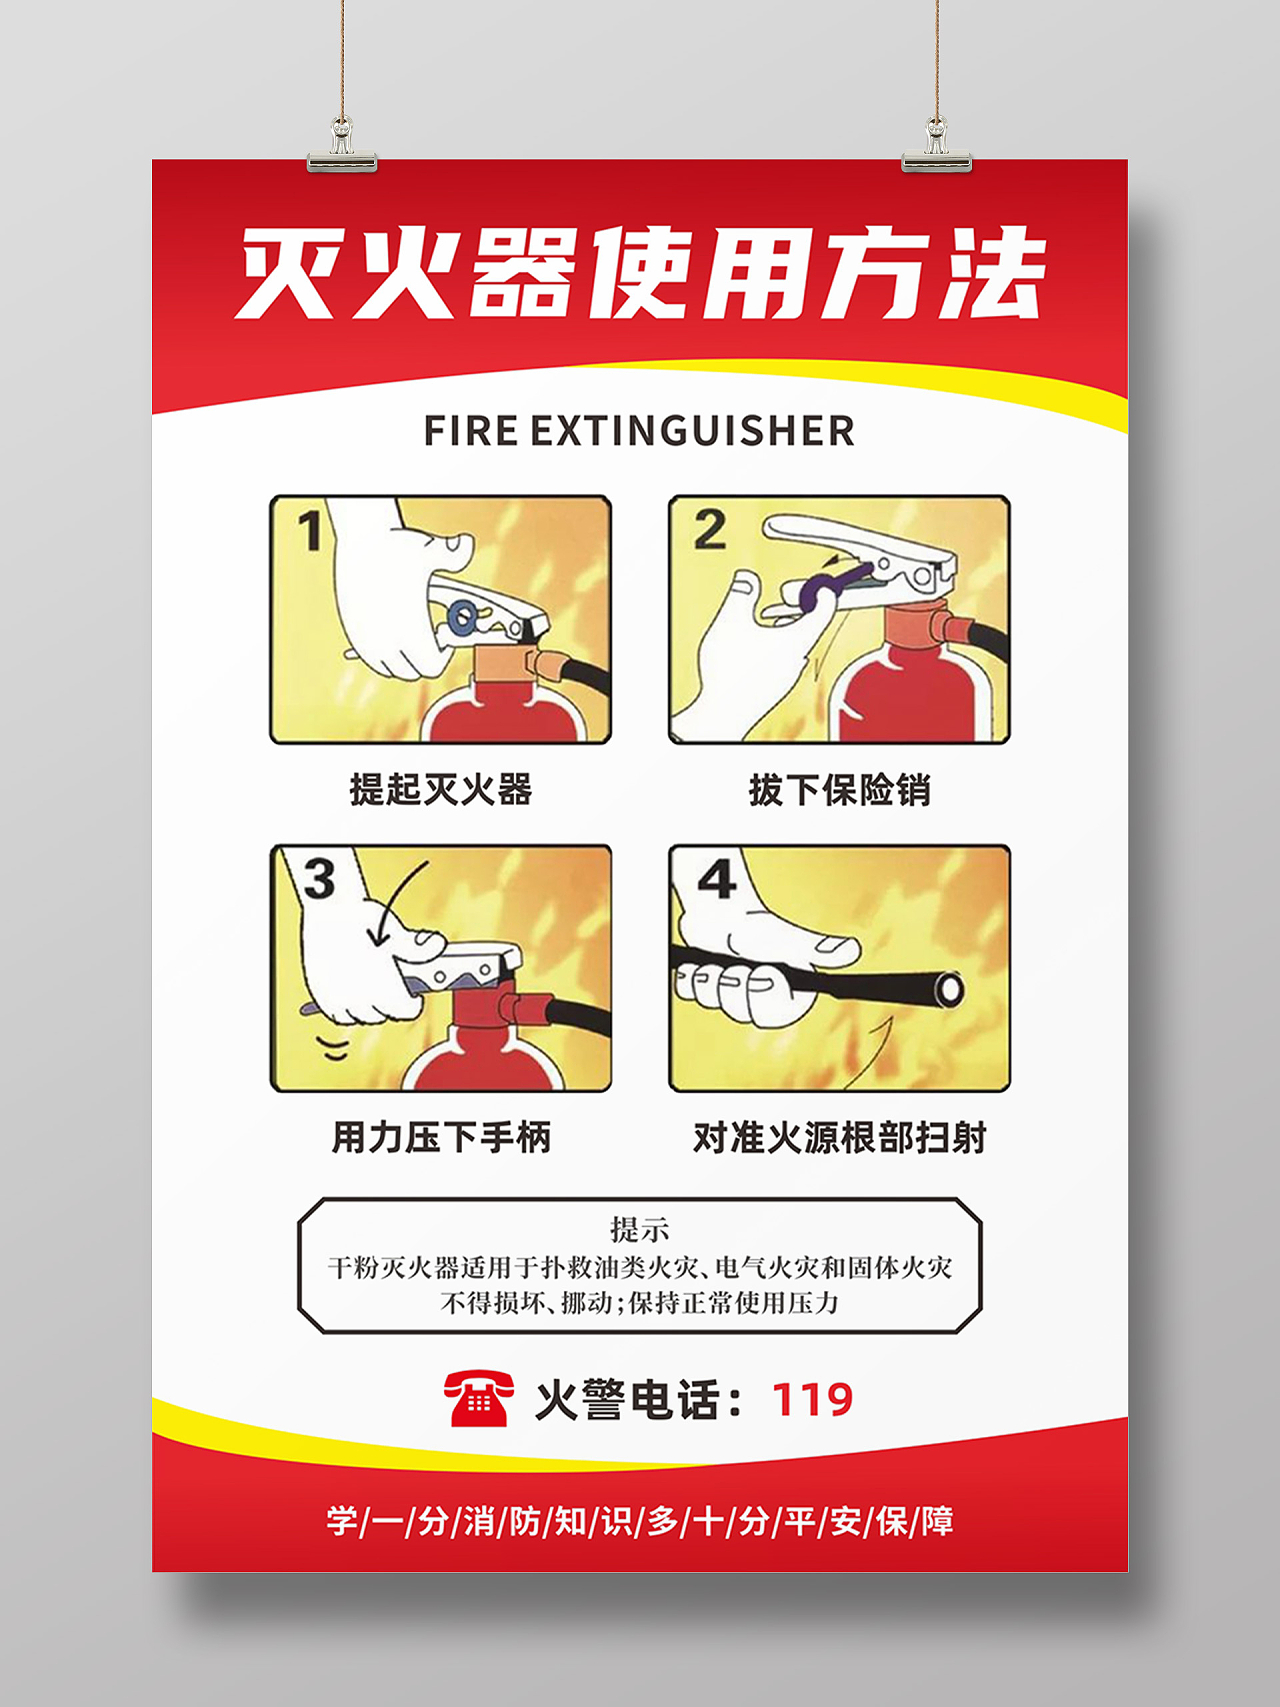 灭火器使用方法消防安全知识火警宣传展板